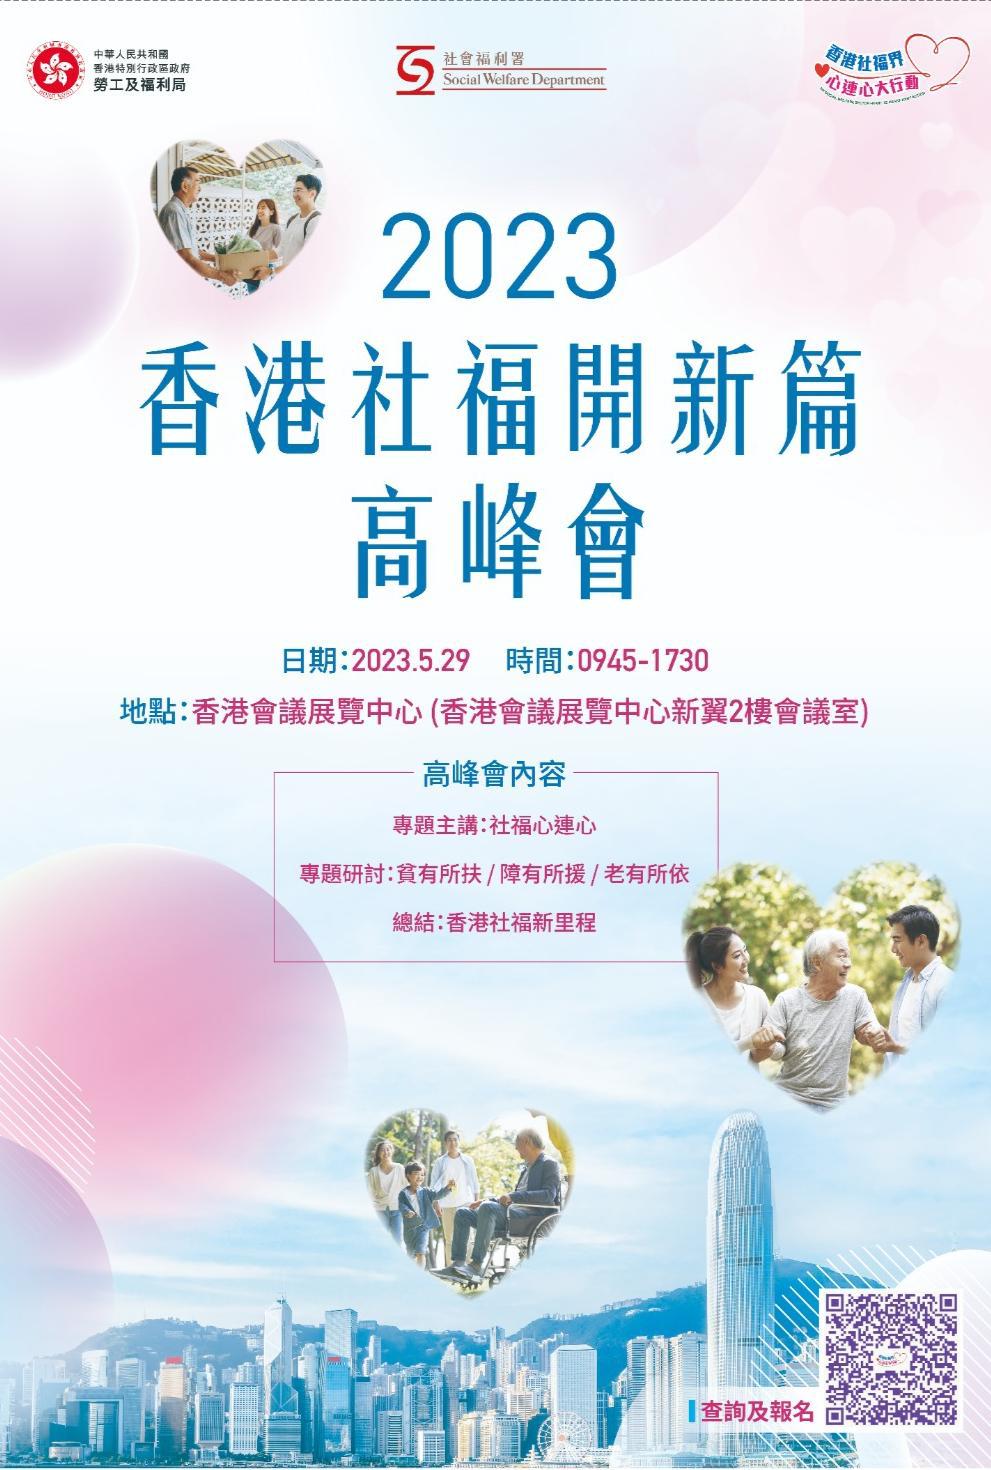 2023香港社福開新篇高峰會將於下周一(29日)舉行。香港社福界心連心大行動FB圖片